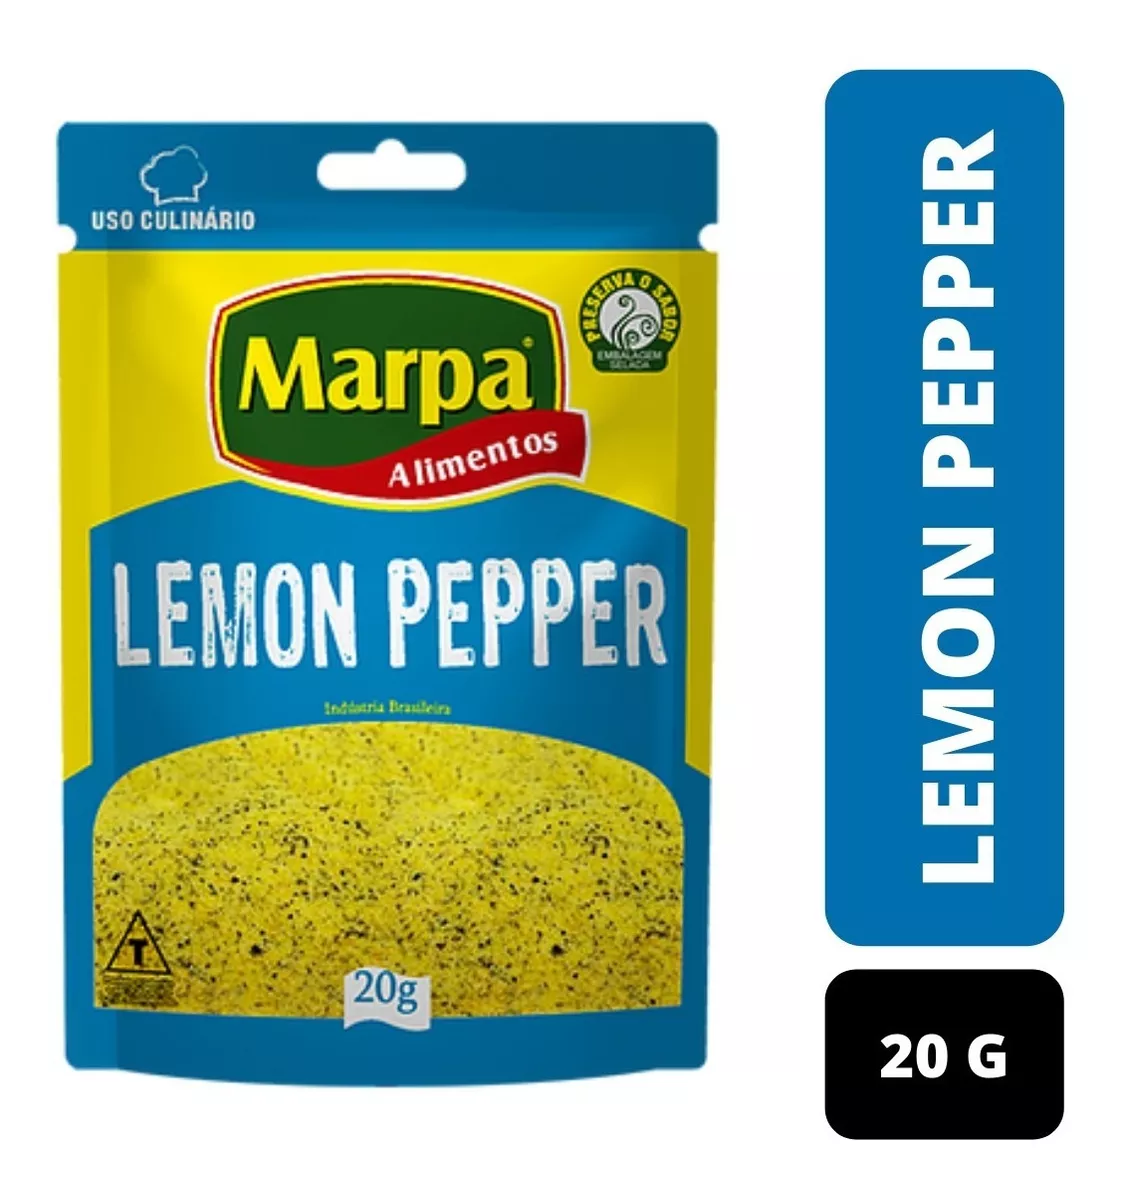 Terceira imagem para pesquisa de lemon pepper